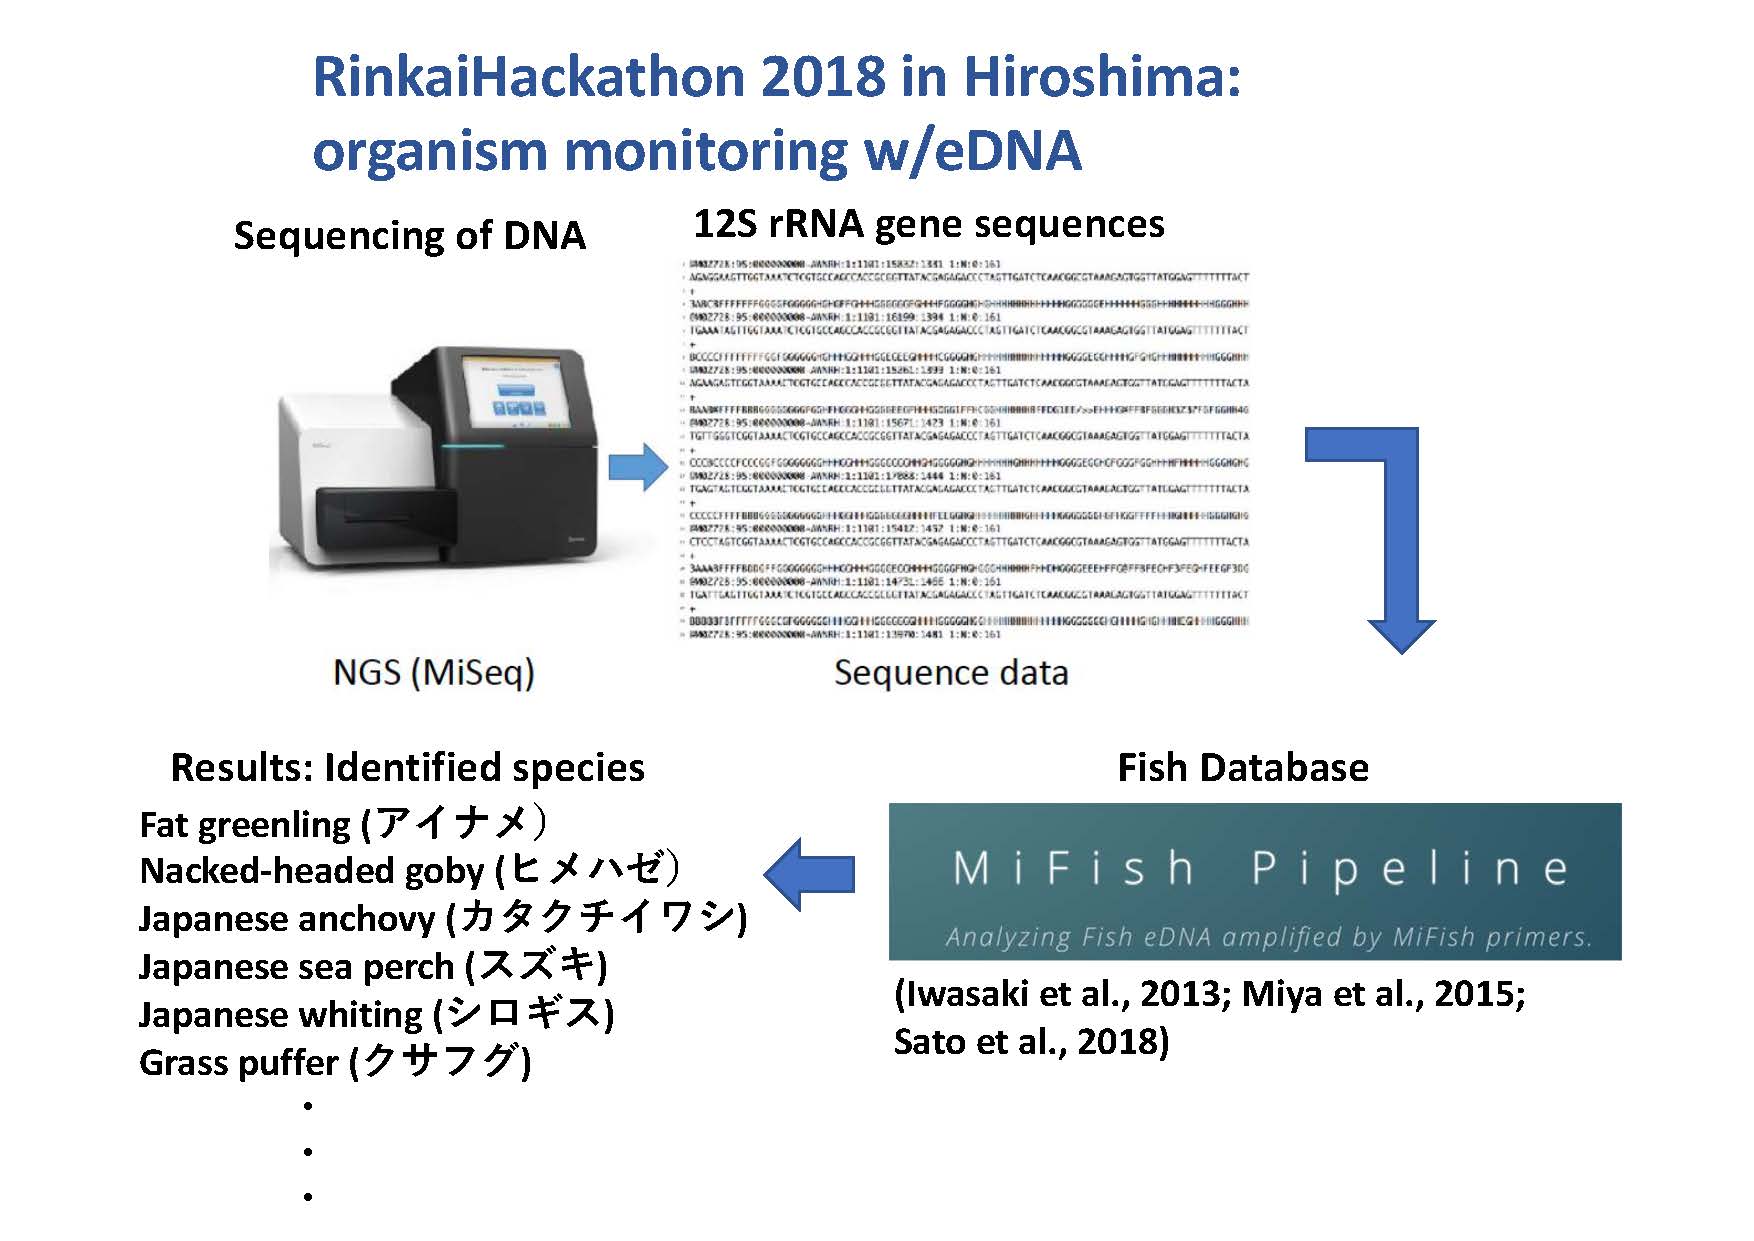 Rinkai Hackathon Information page8